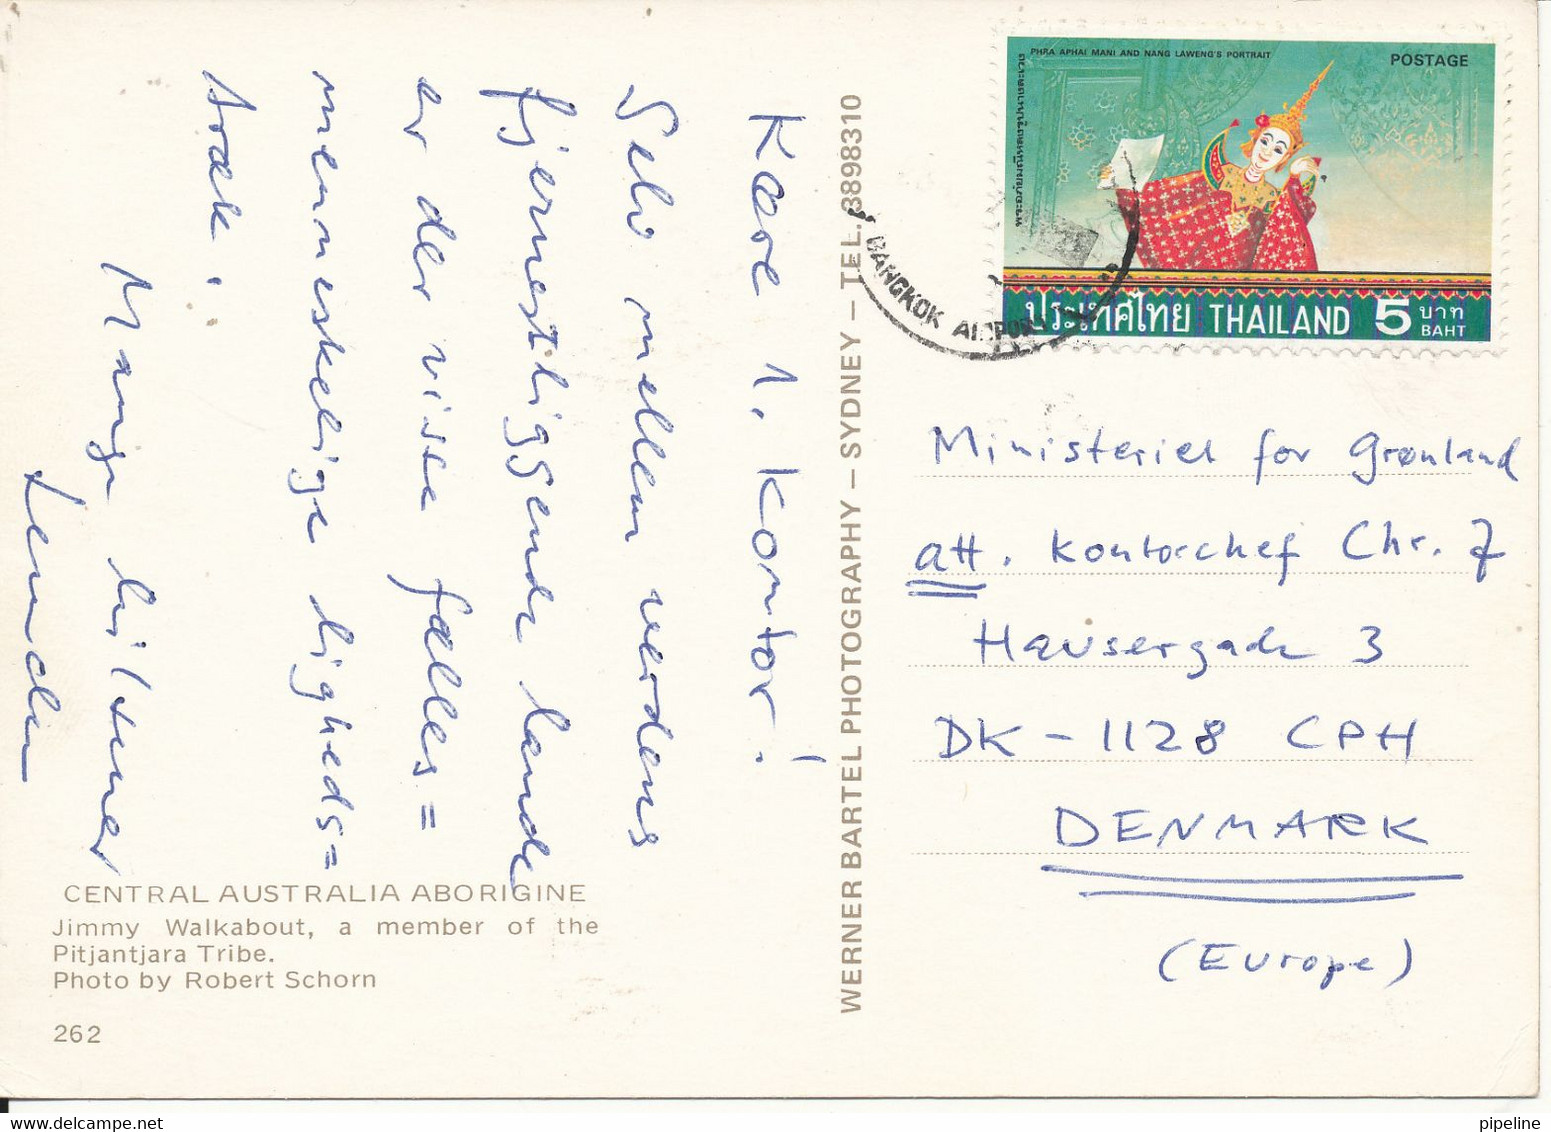 Australian Postcard Sent To Denmark With Thailand Stamp (Central Australia Aborigine) - Aborigenes